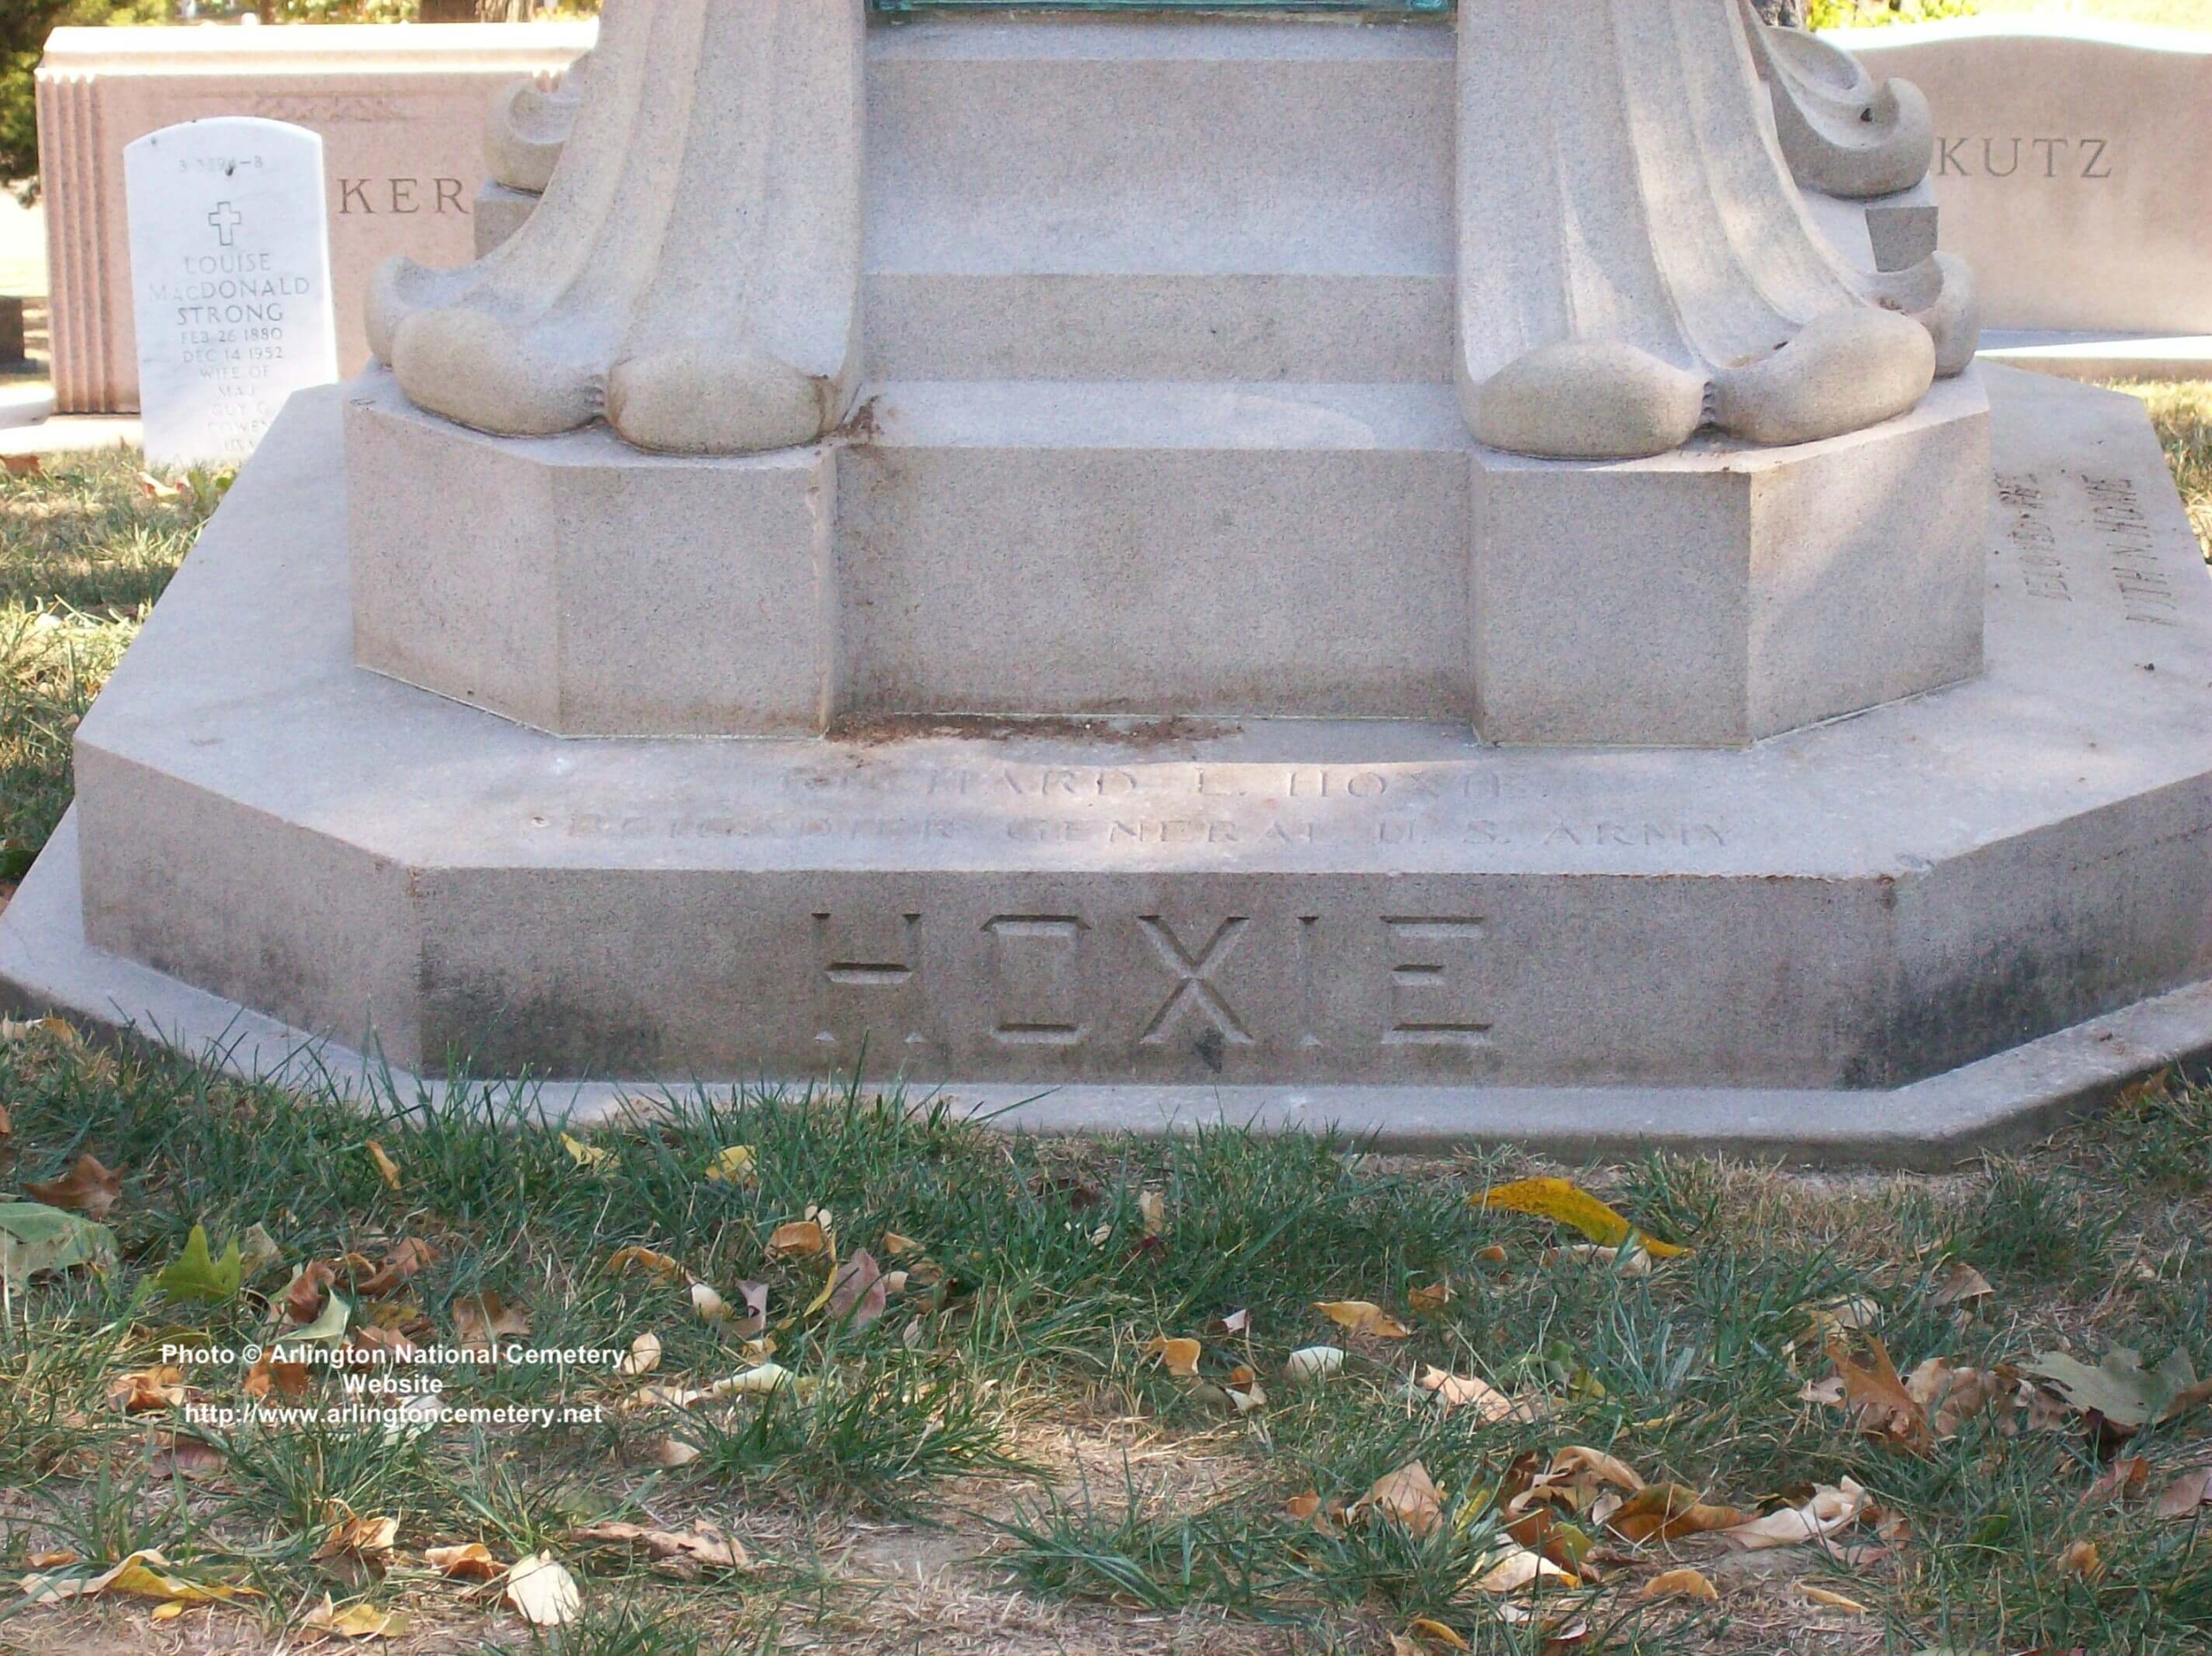 hoxie-gravesite-photo-october-2007-003